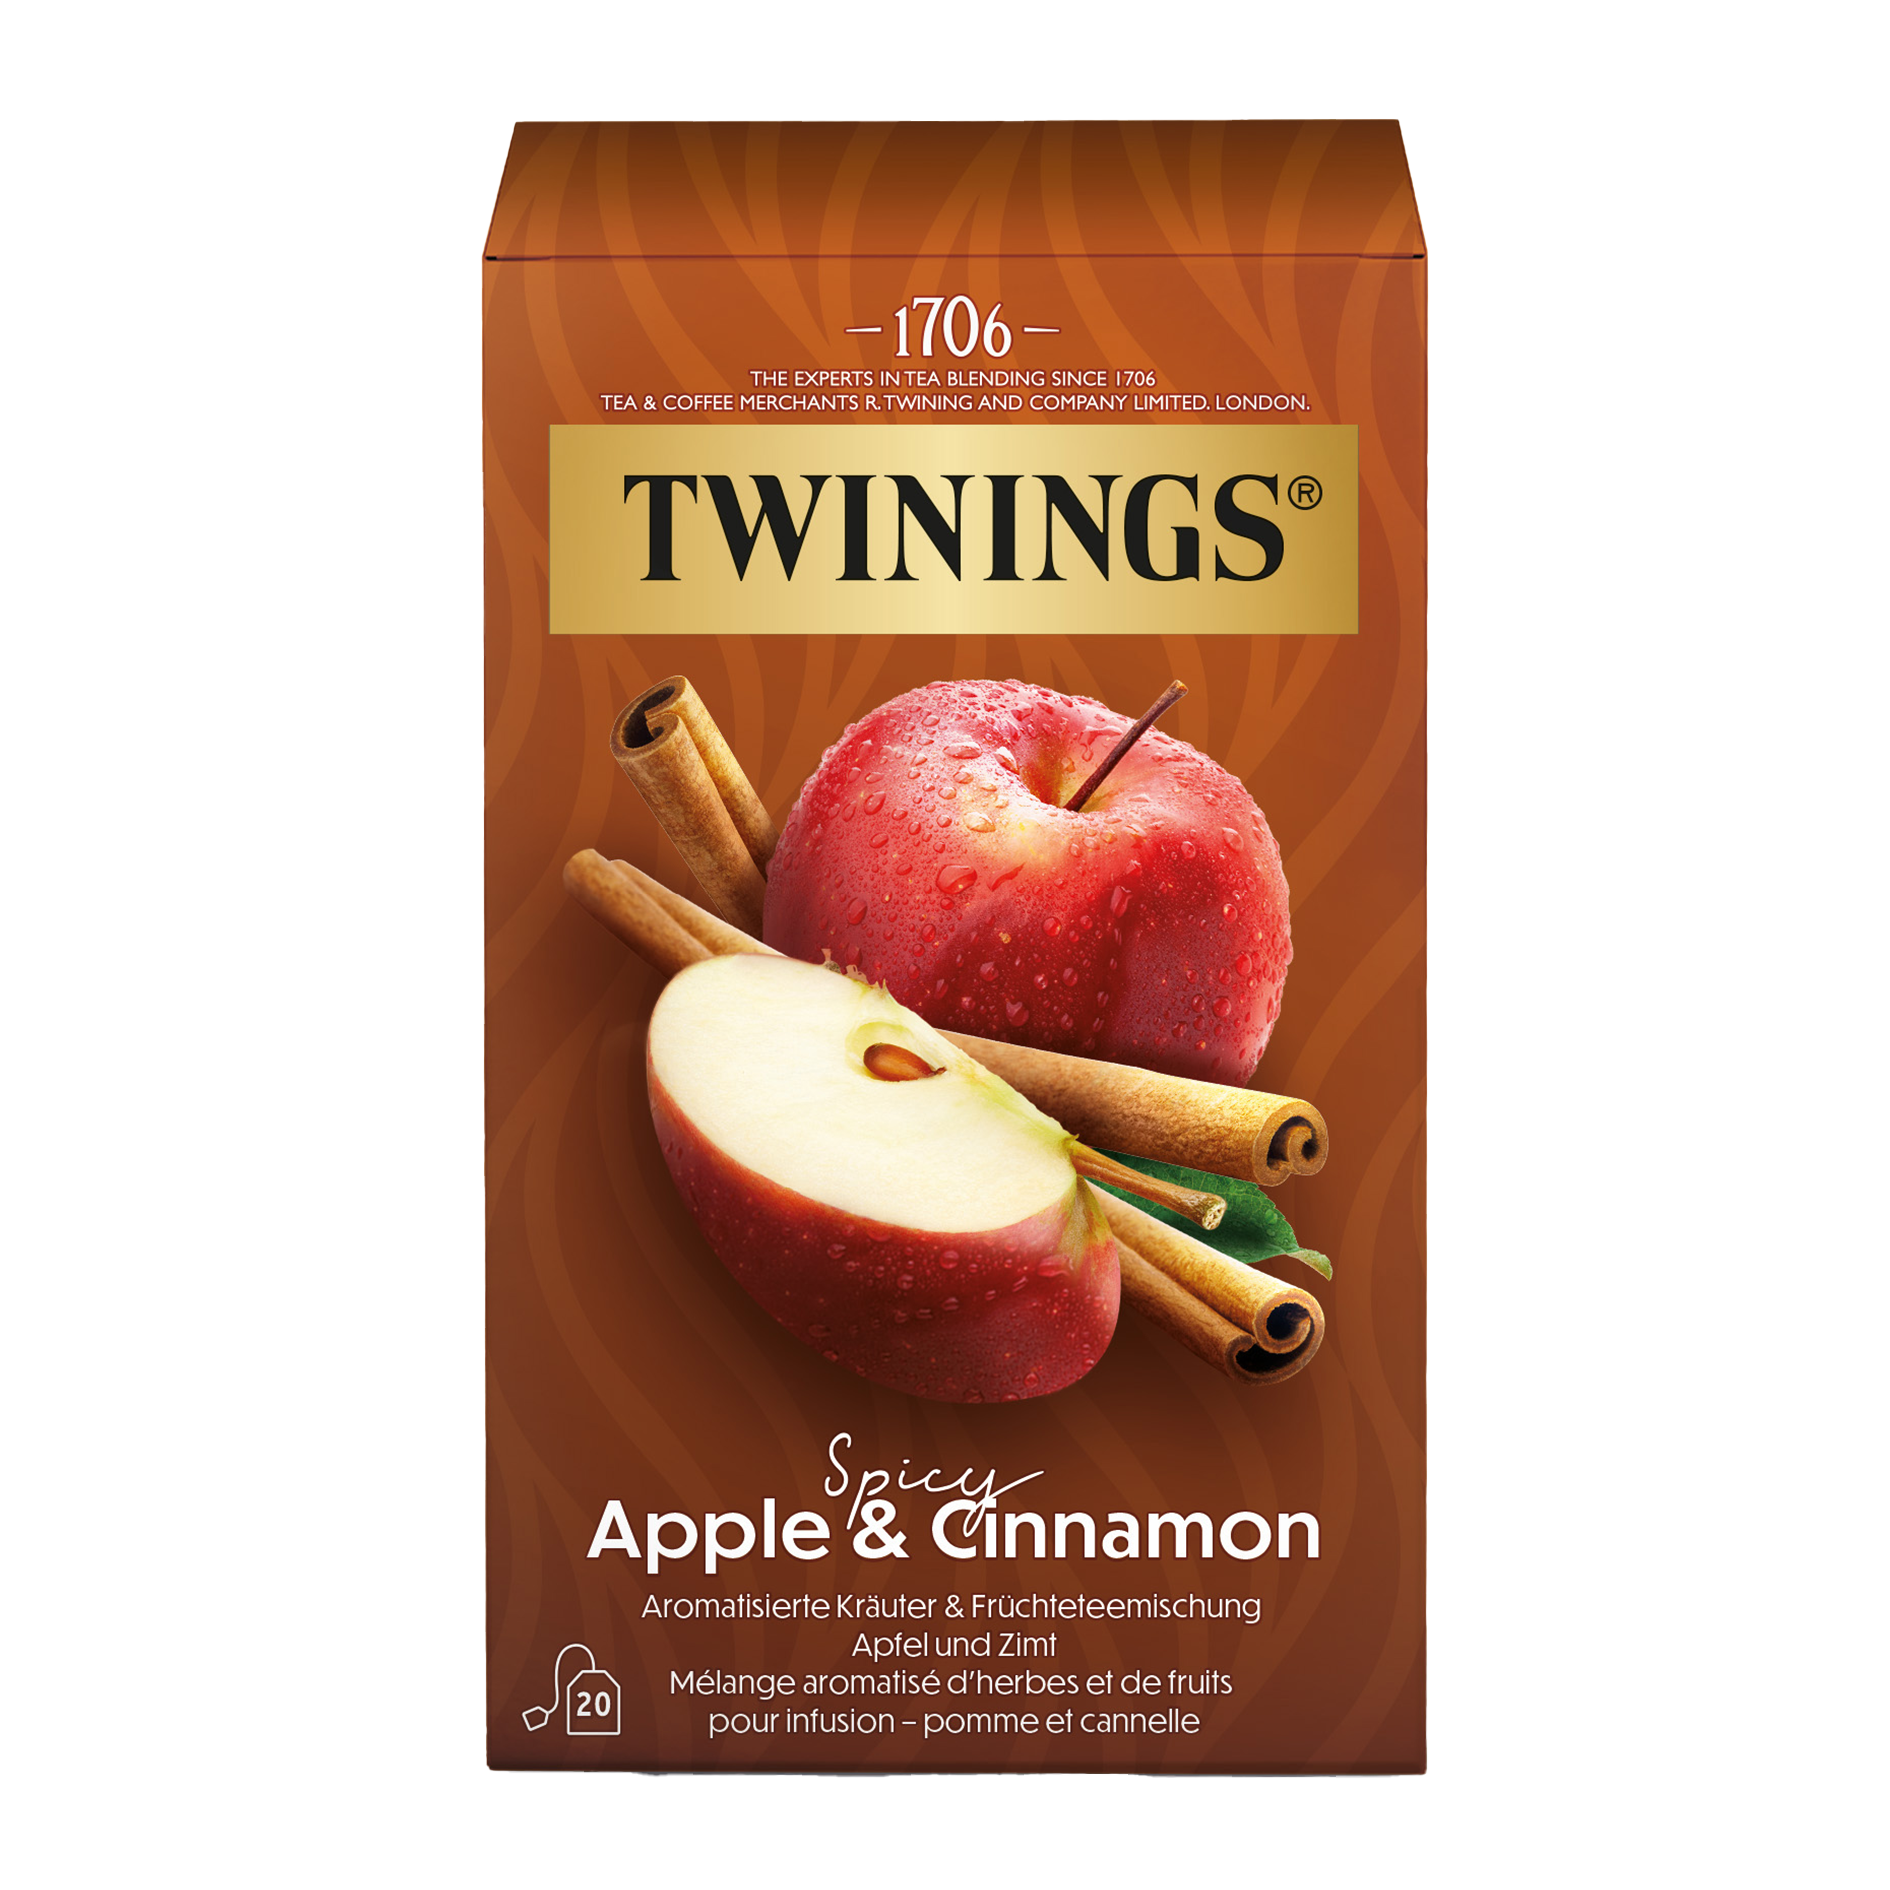  Apple & Cinnamon: l’infusion pleine de sensualité